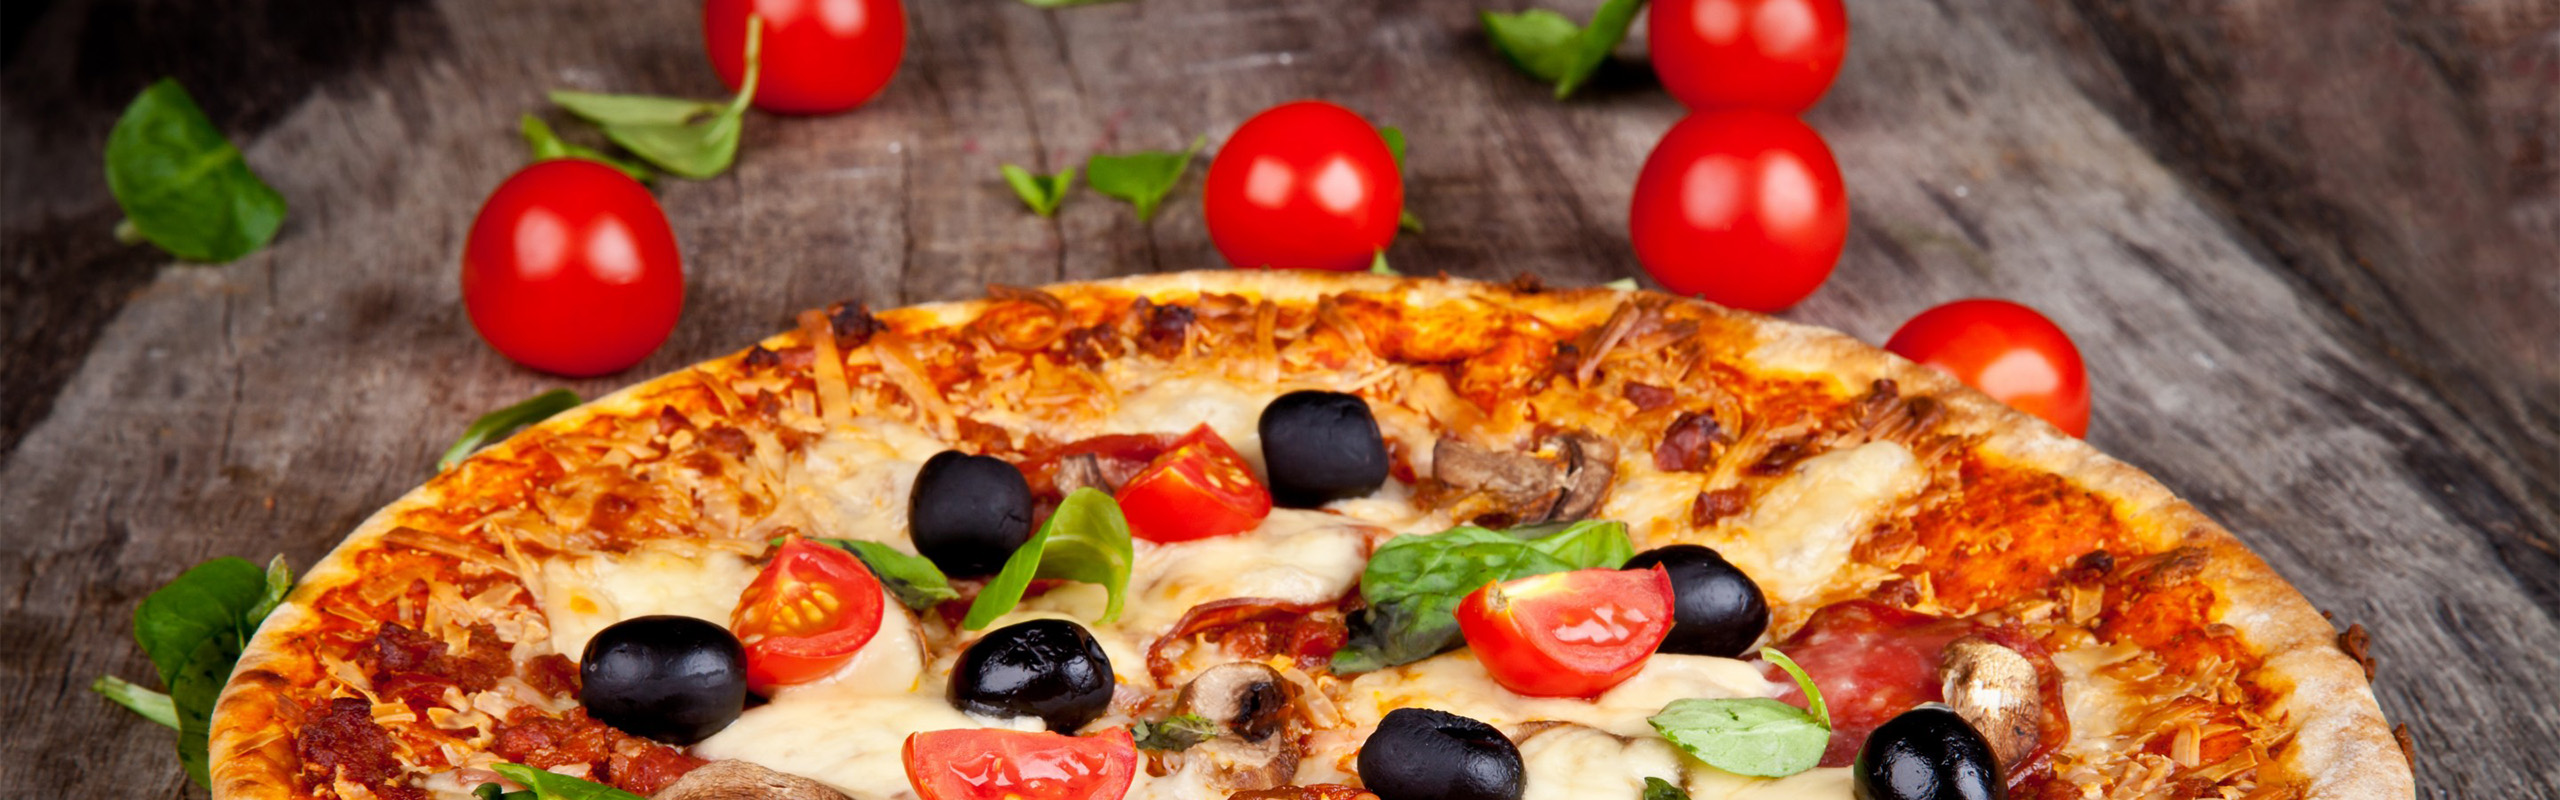 La pizza di Testecalde pizzeria ristorante in provincia di Bari